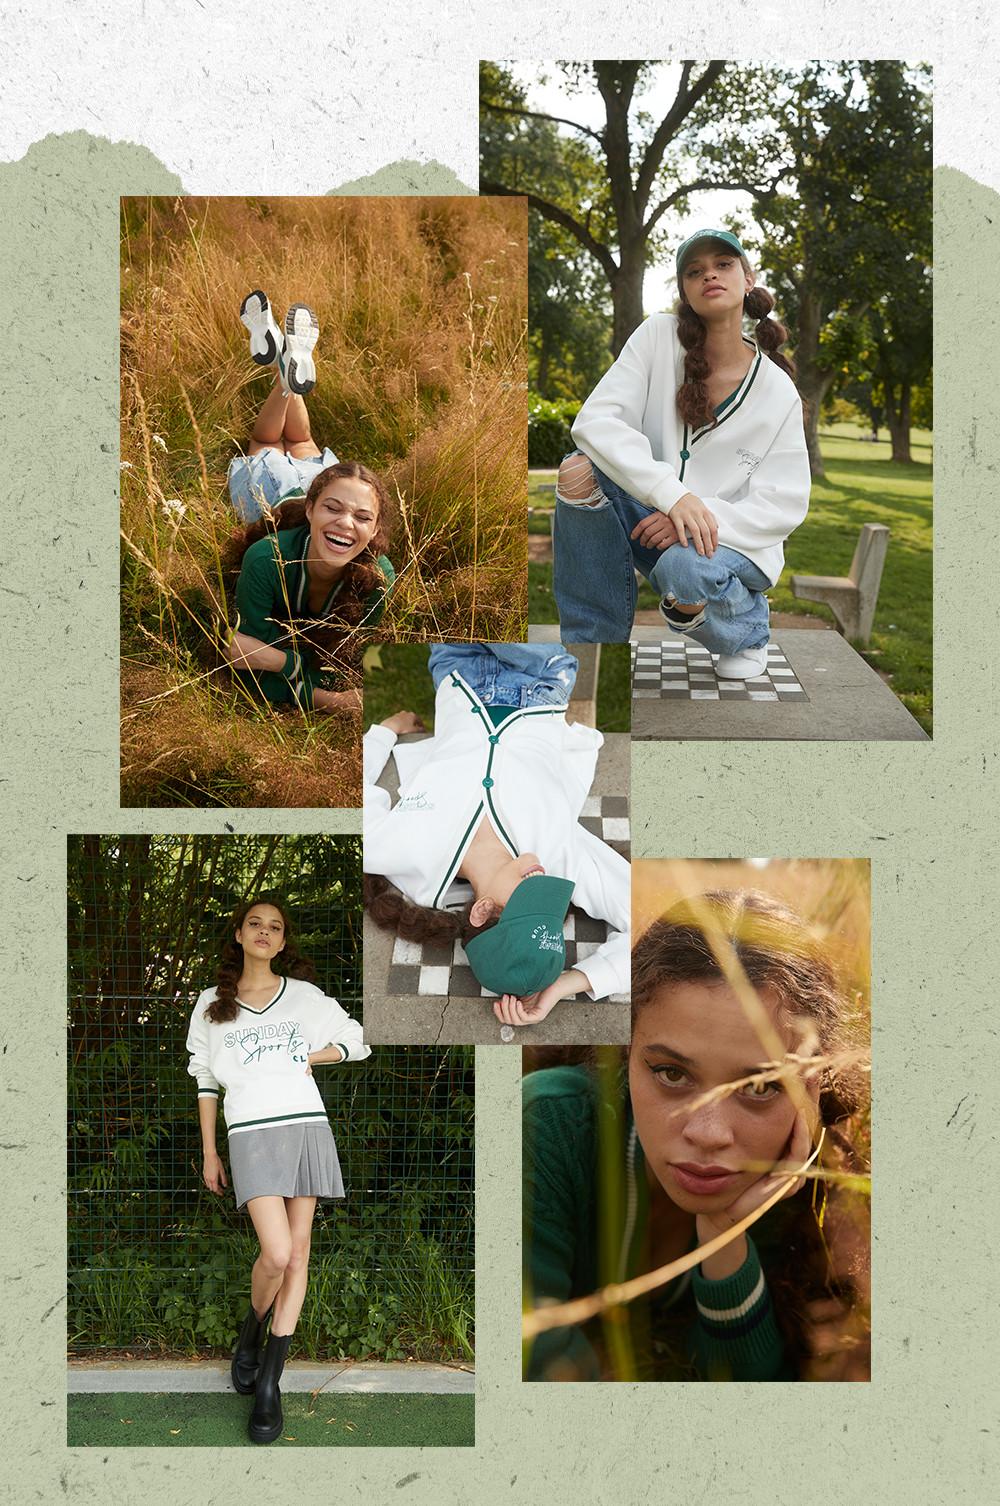 Modelle che indossano abbigliamento in stile preppy anni 90' su sfondo verde